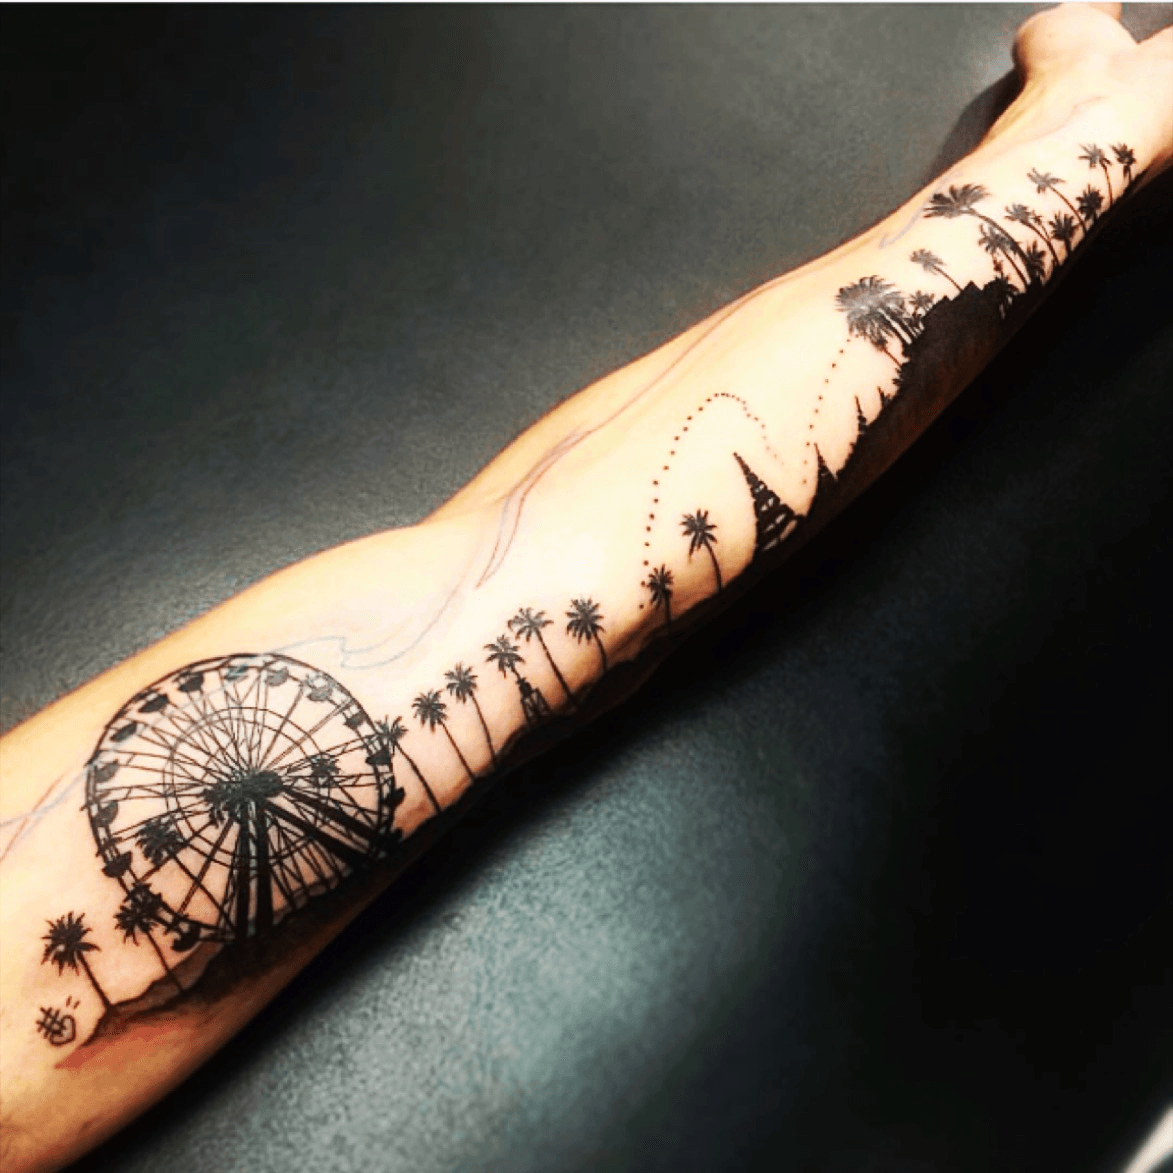 Tattoo tagged with ferris wheel dots tree  inkedappcom